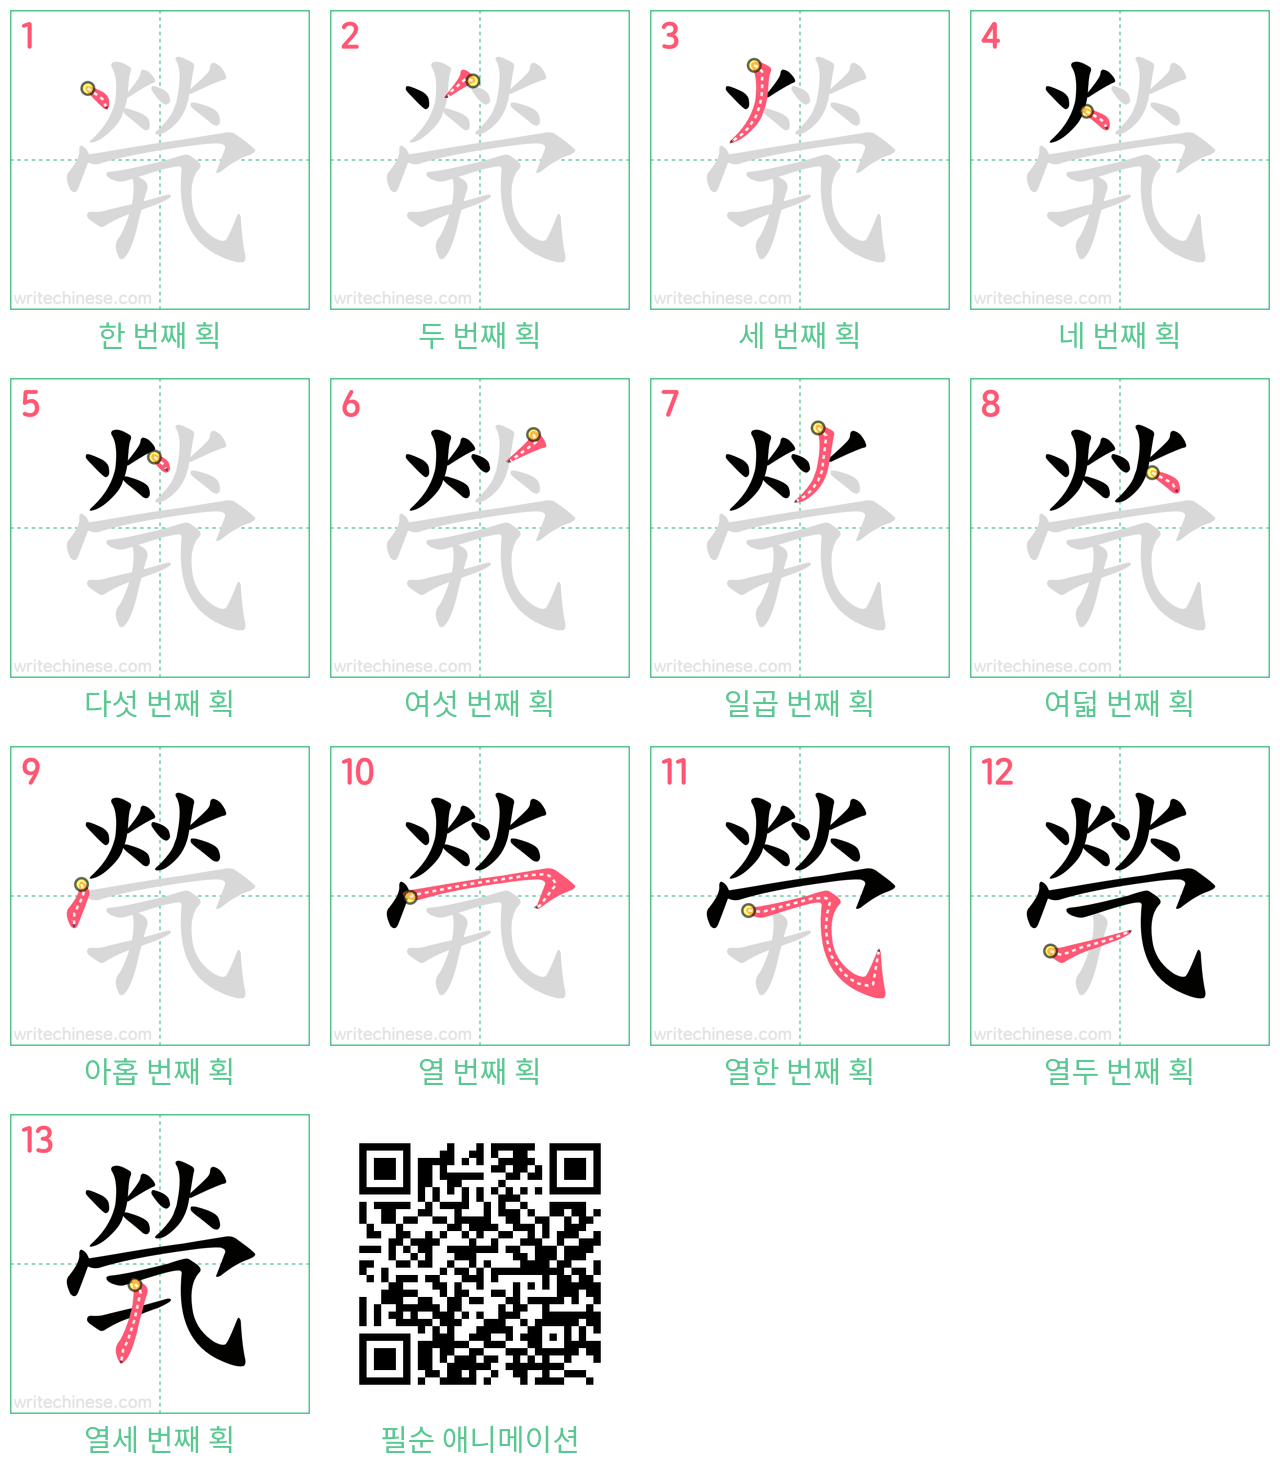 煢 step-by-step stroke order diagrams